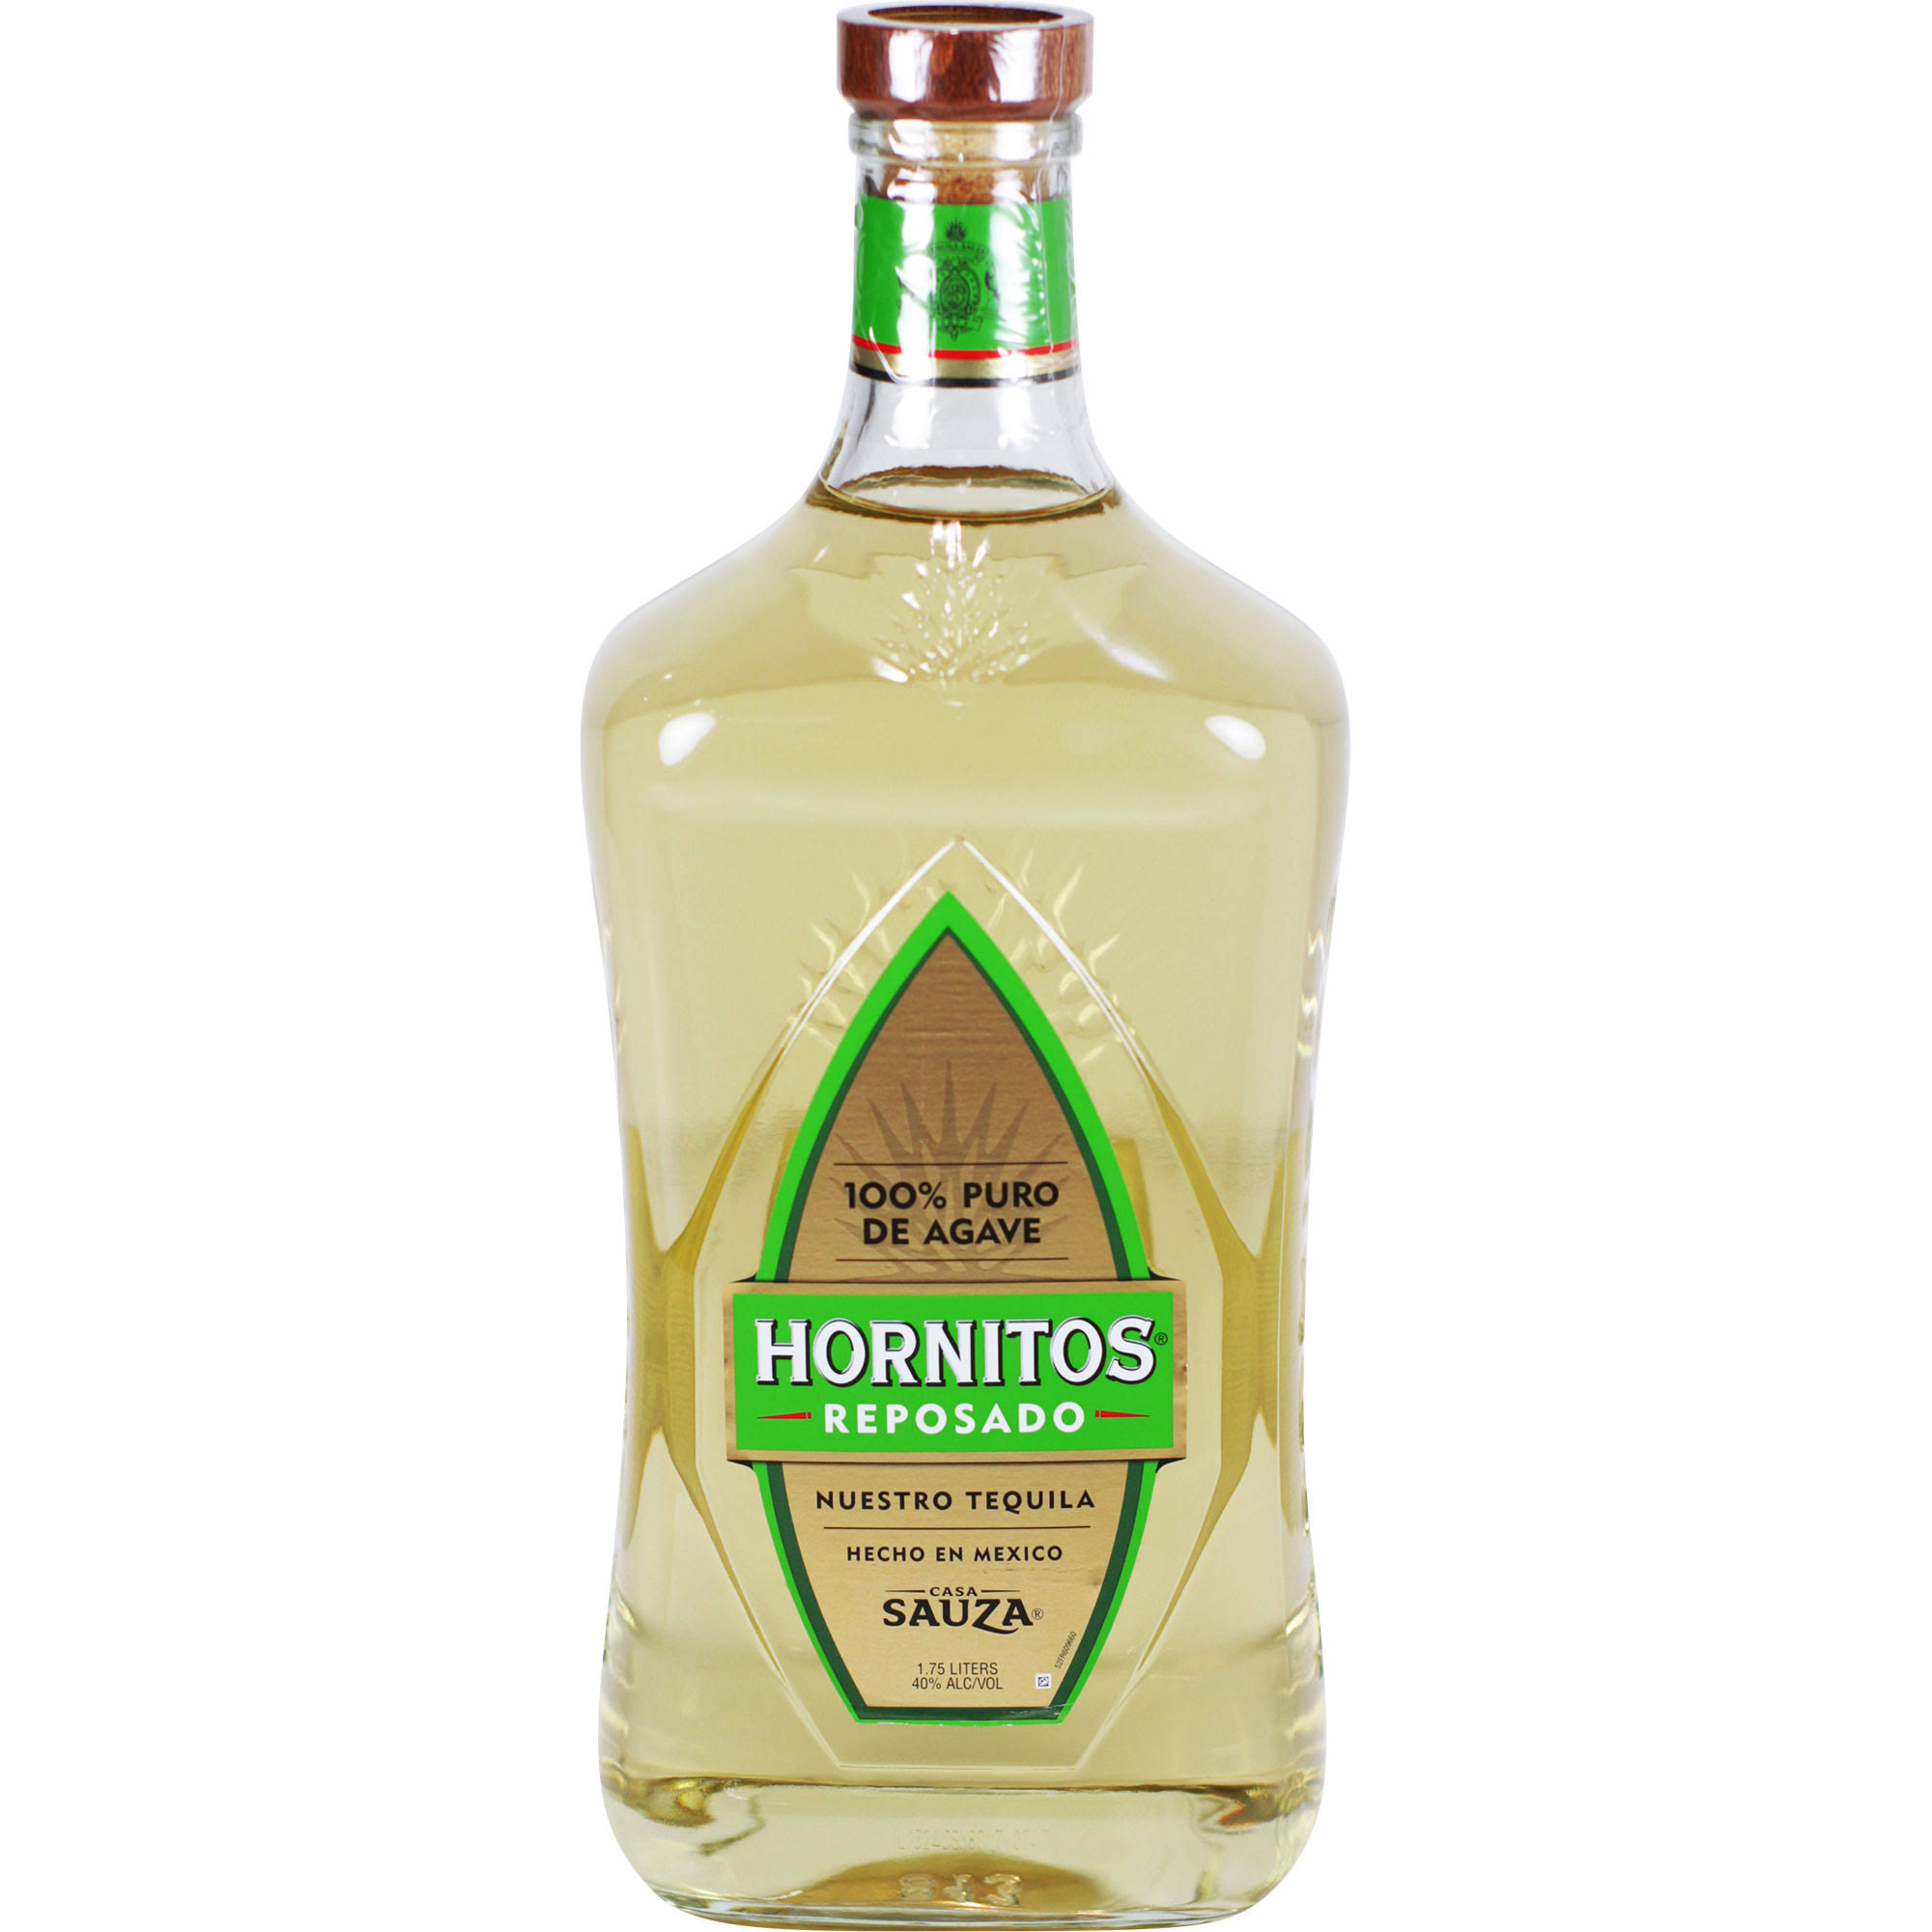 Hornitos Tequila, Reposado - 1.75 liter